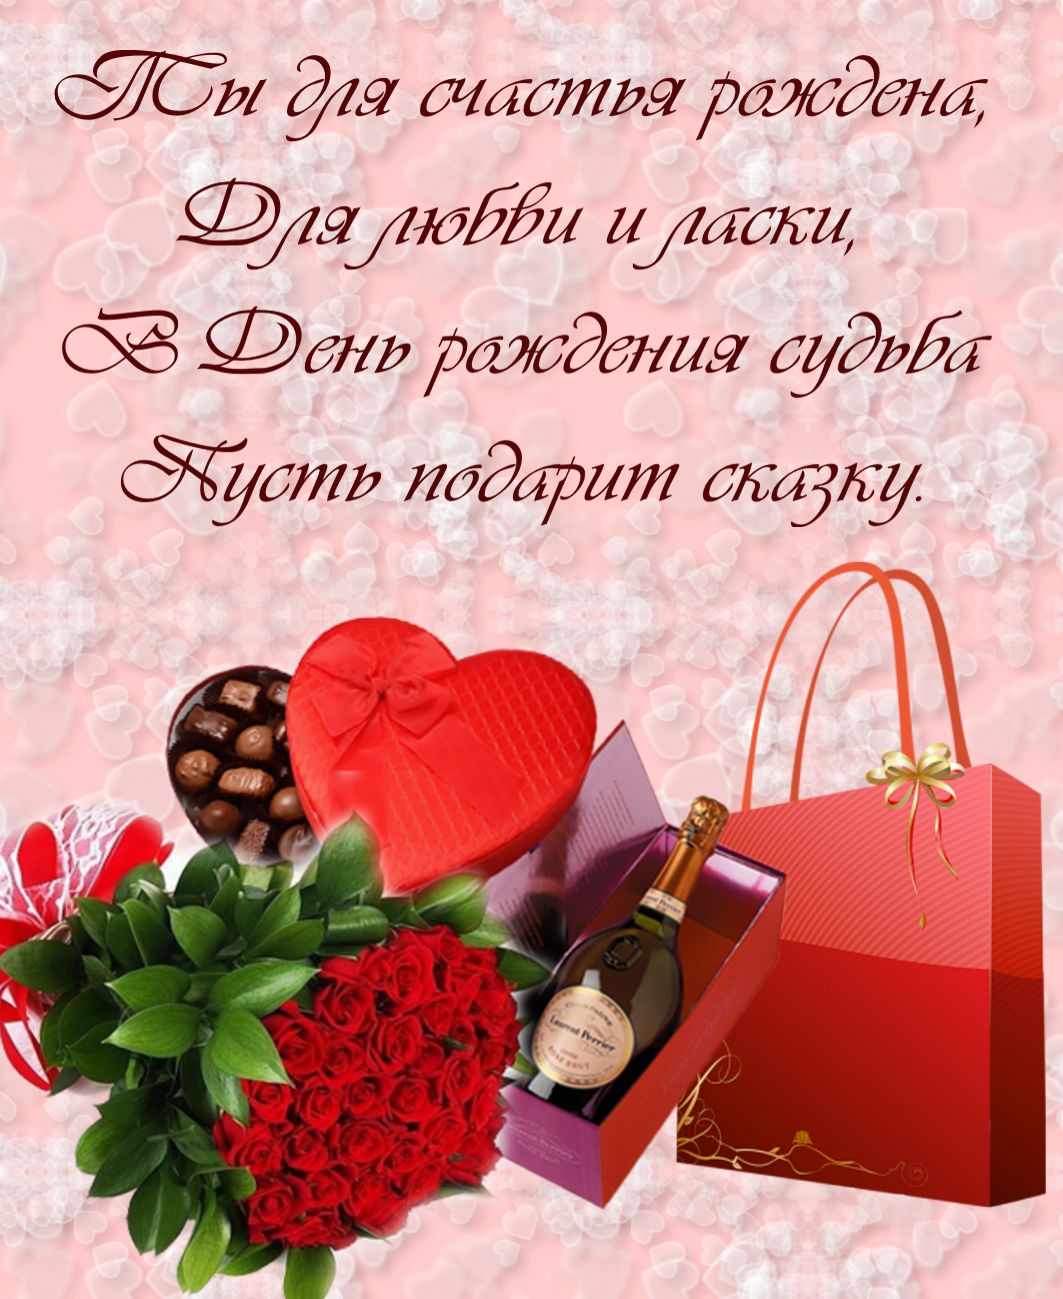 Лучшие поздравления с днем рождения женщине своими словами | redzhina.ru